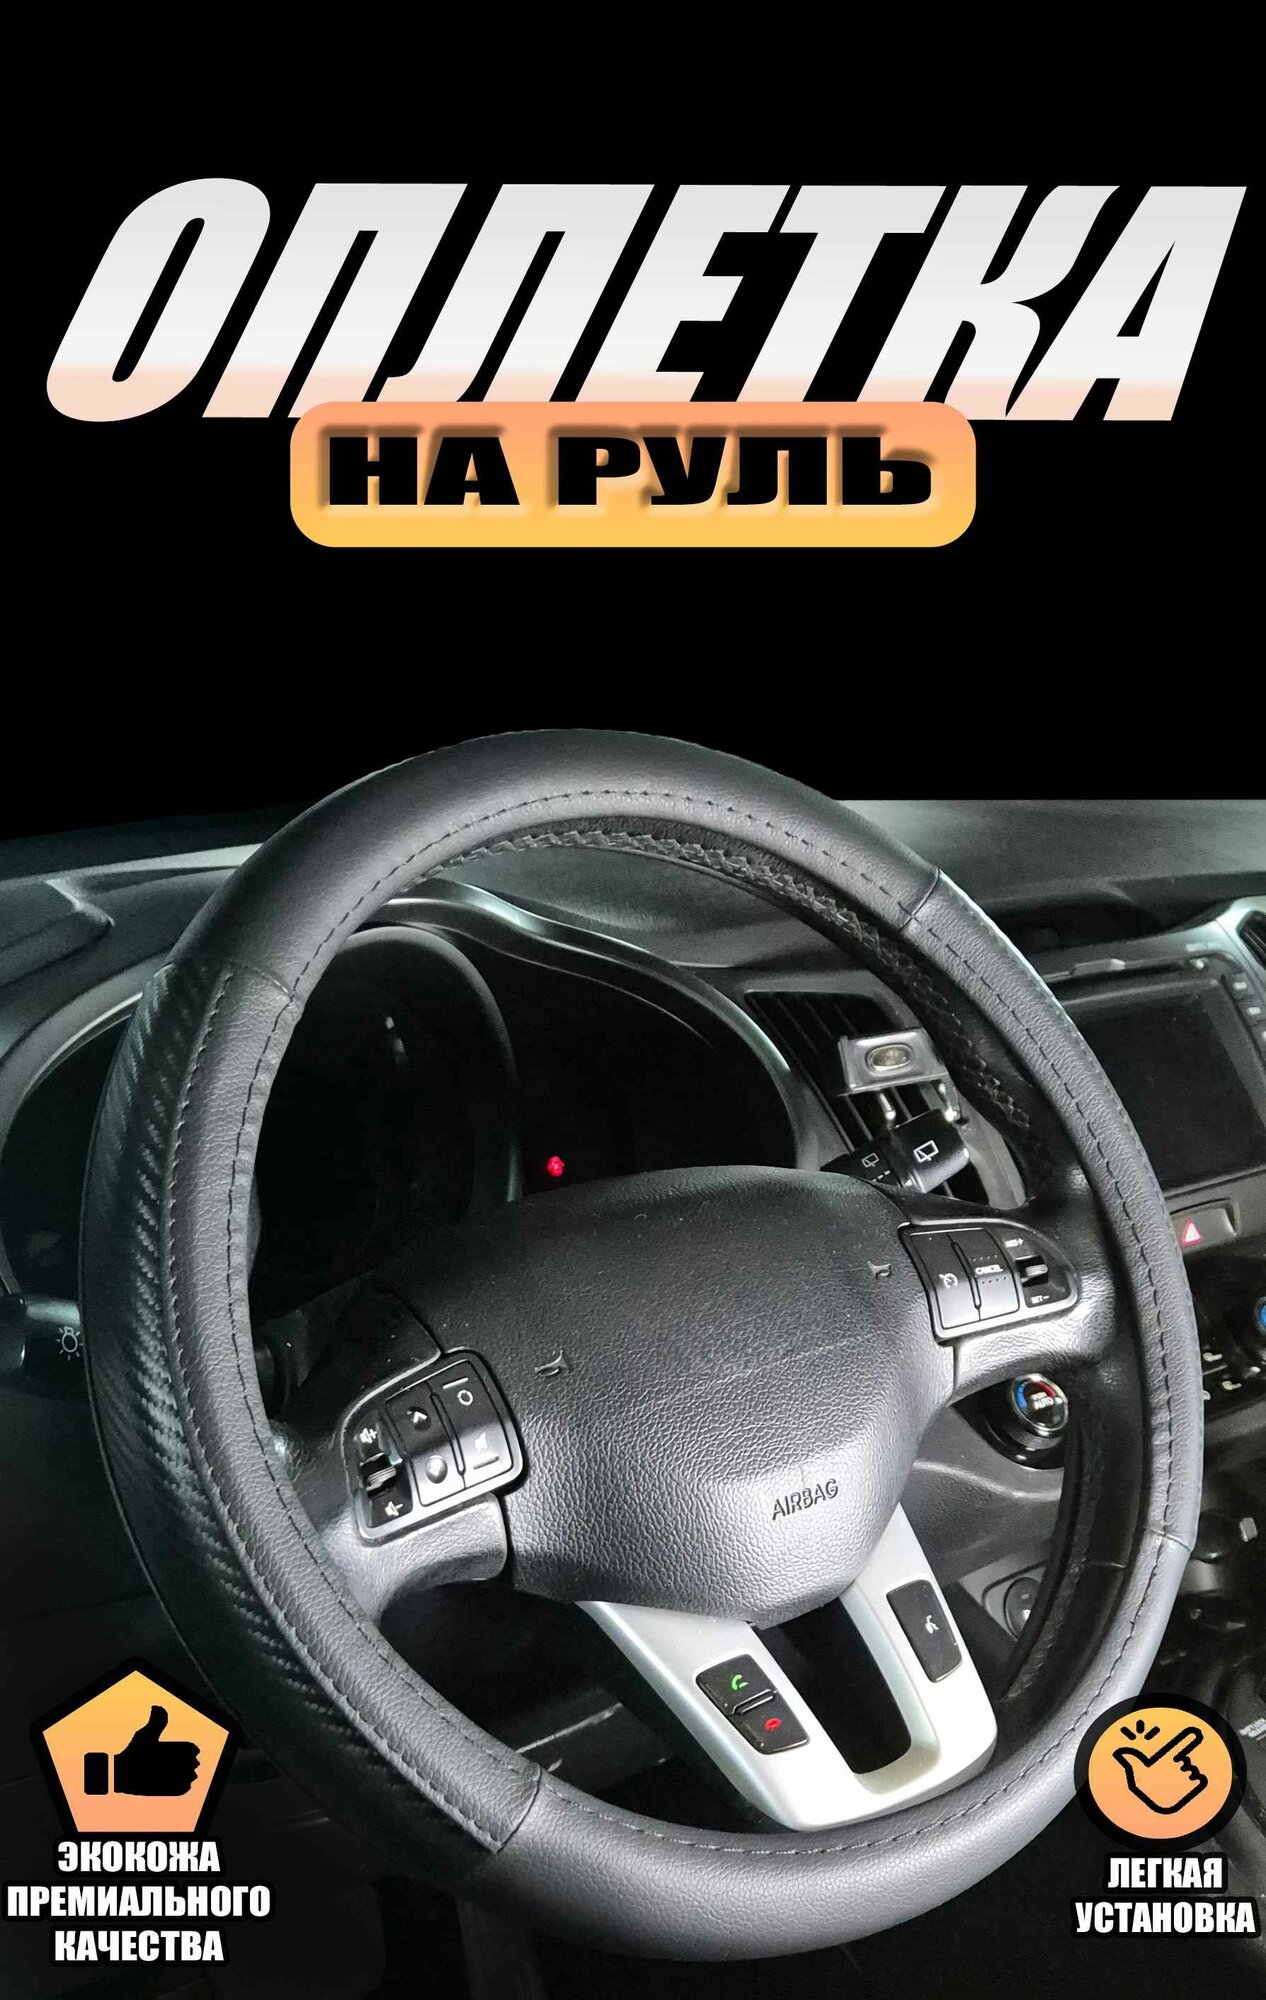 Оплетка (чехол) на руль Митсубиси Галант (2008 - 2012) седан / Mitsubishi Galant, экокожа и карбон (премиального качества), Черный